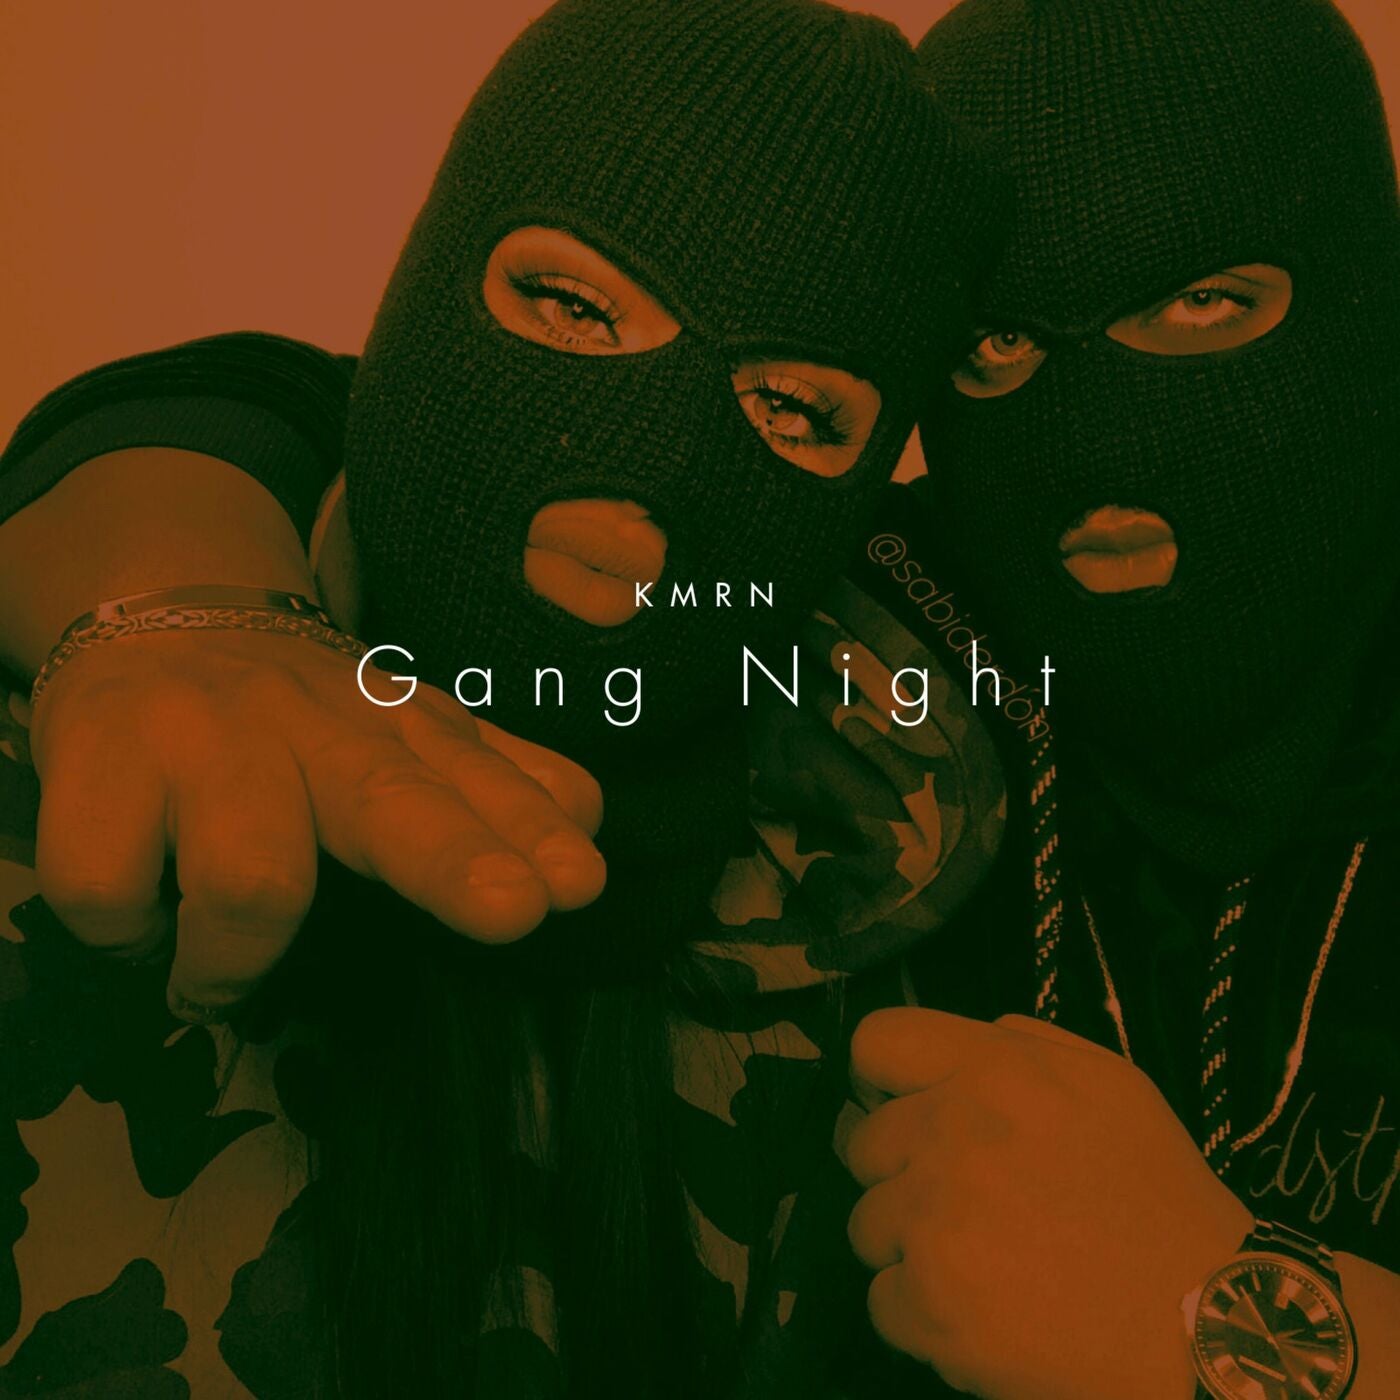 Gang Night